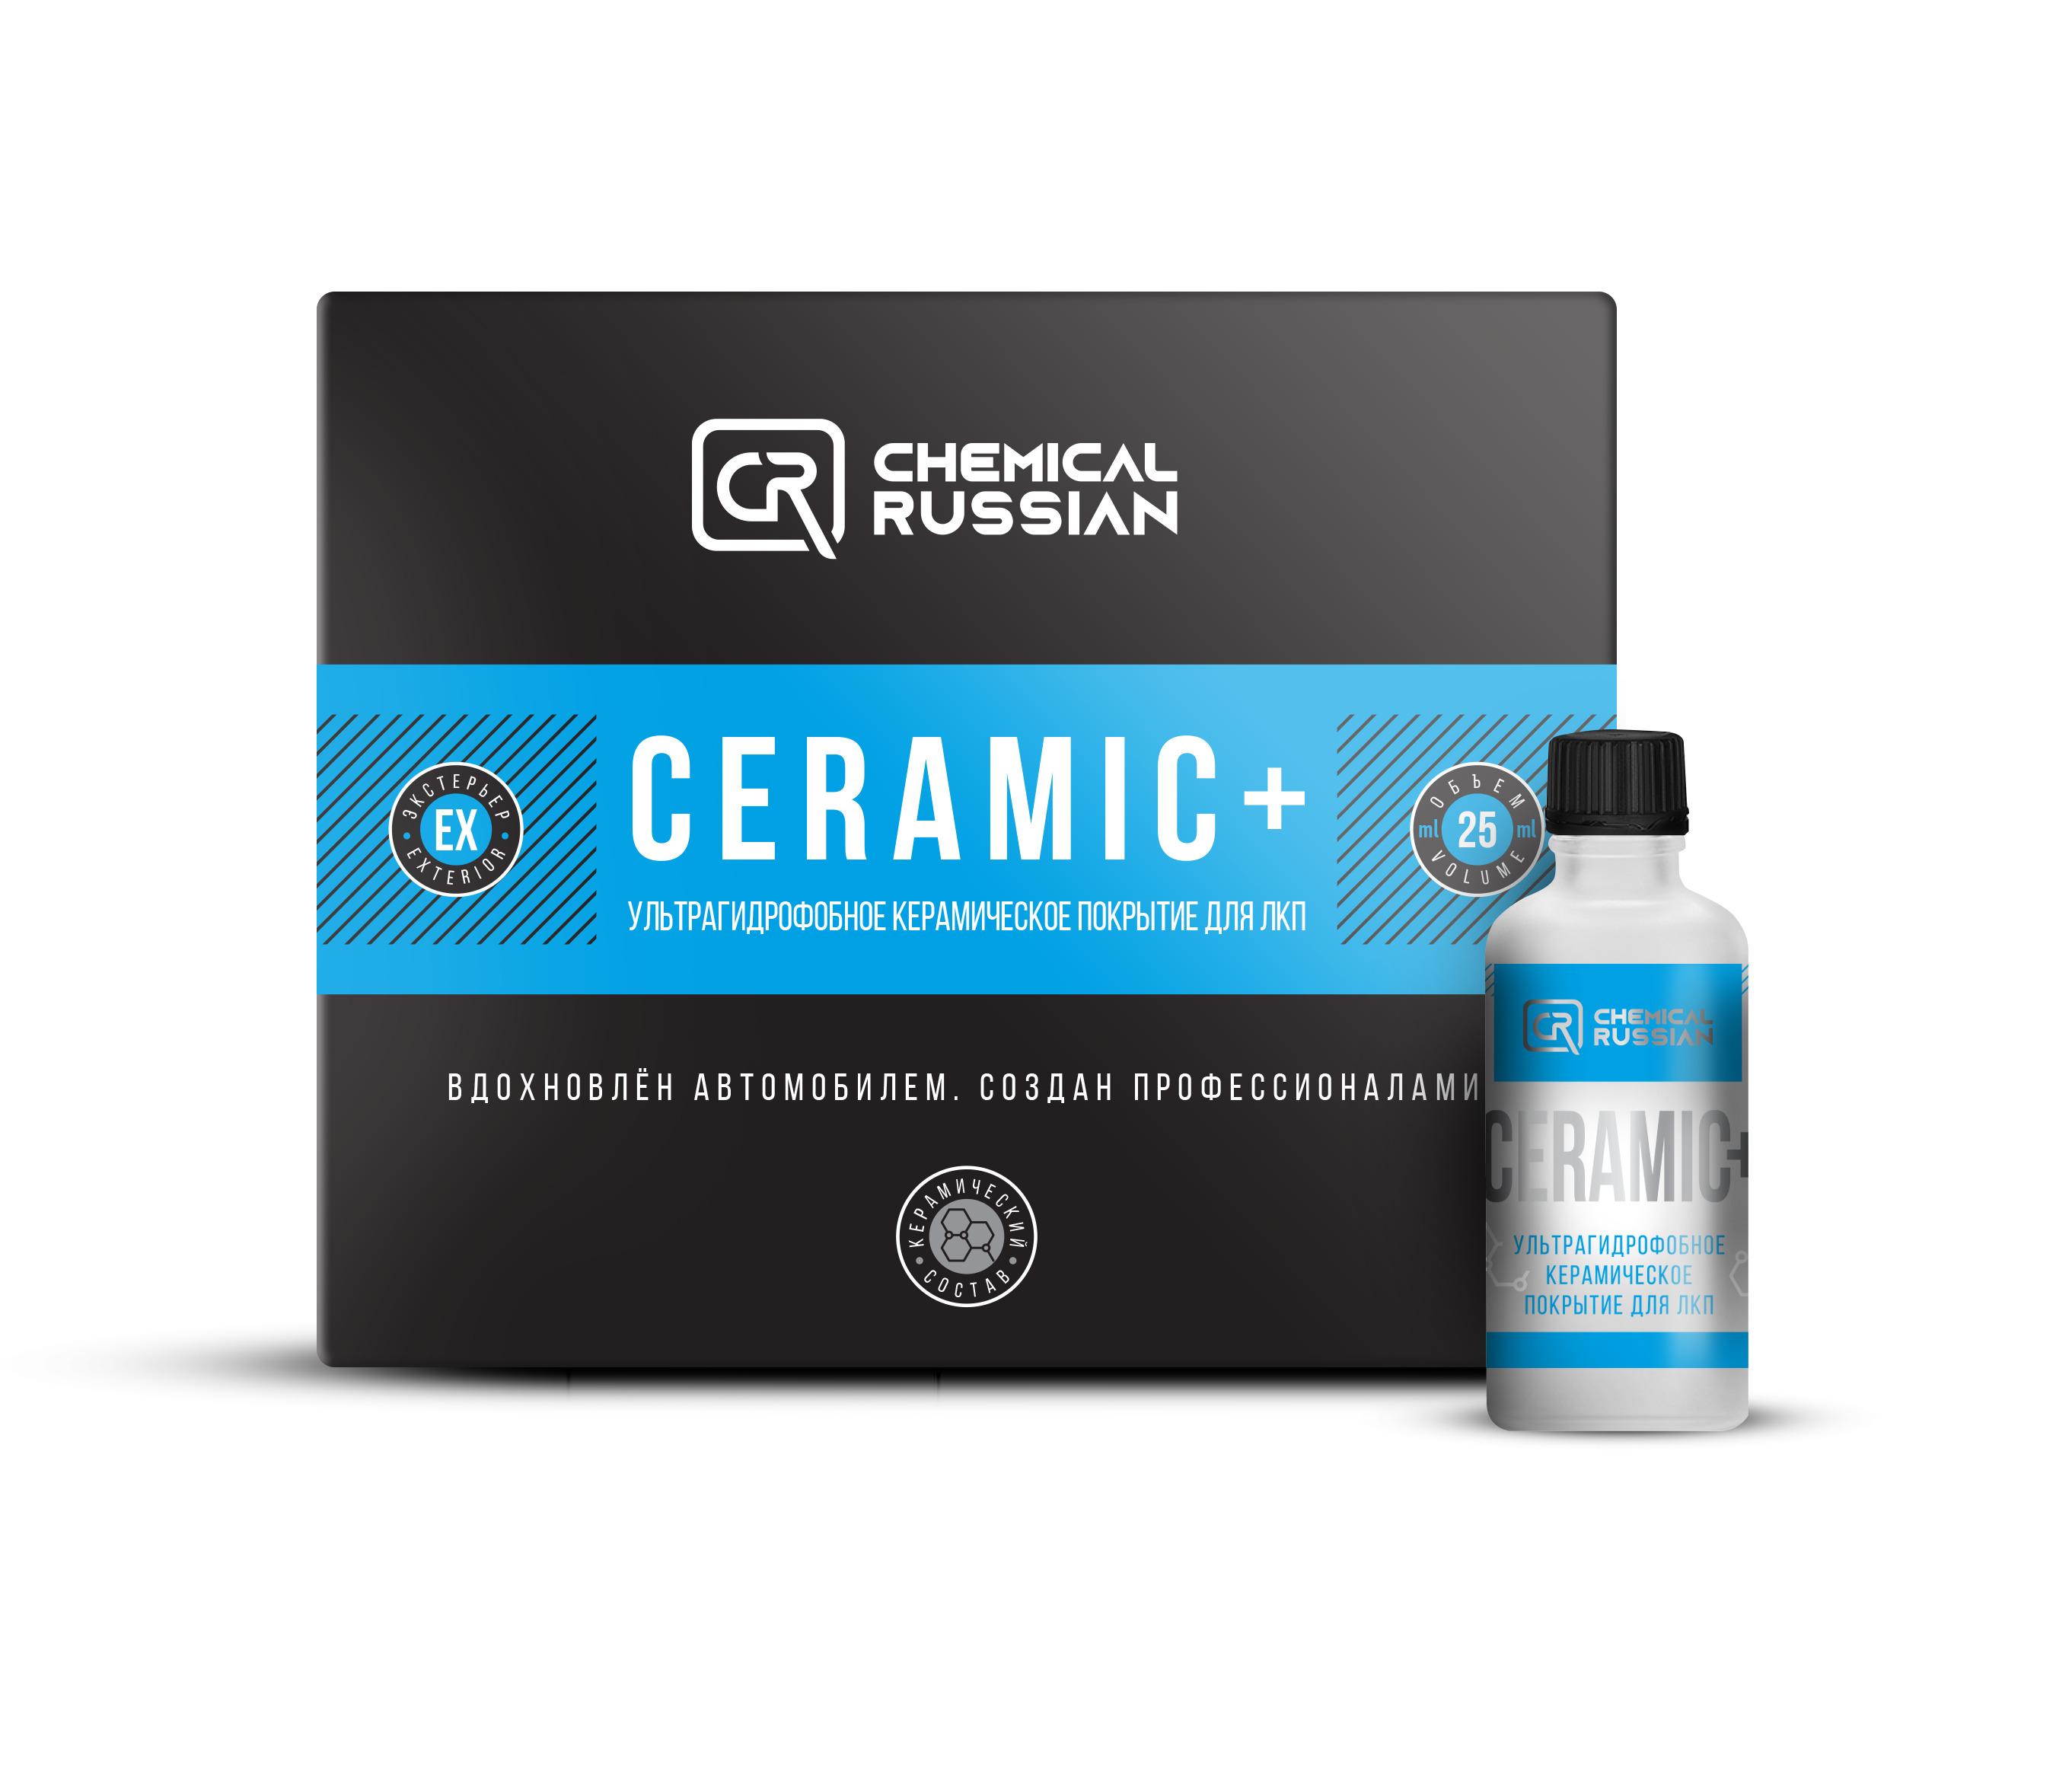 Ceramic+, 25 мл / Chemical Russian / Керамика для автомобиля, керамическое покрытие для кузова автомобиля